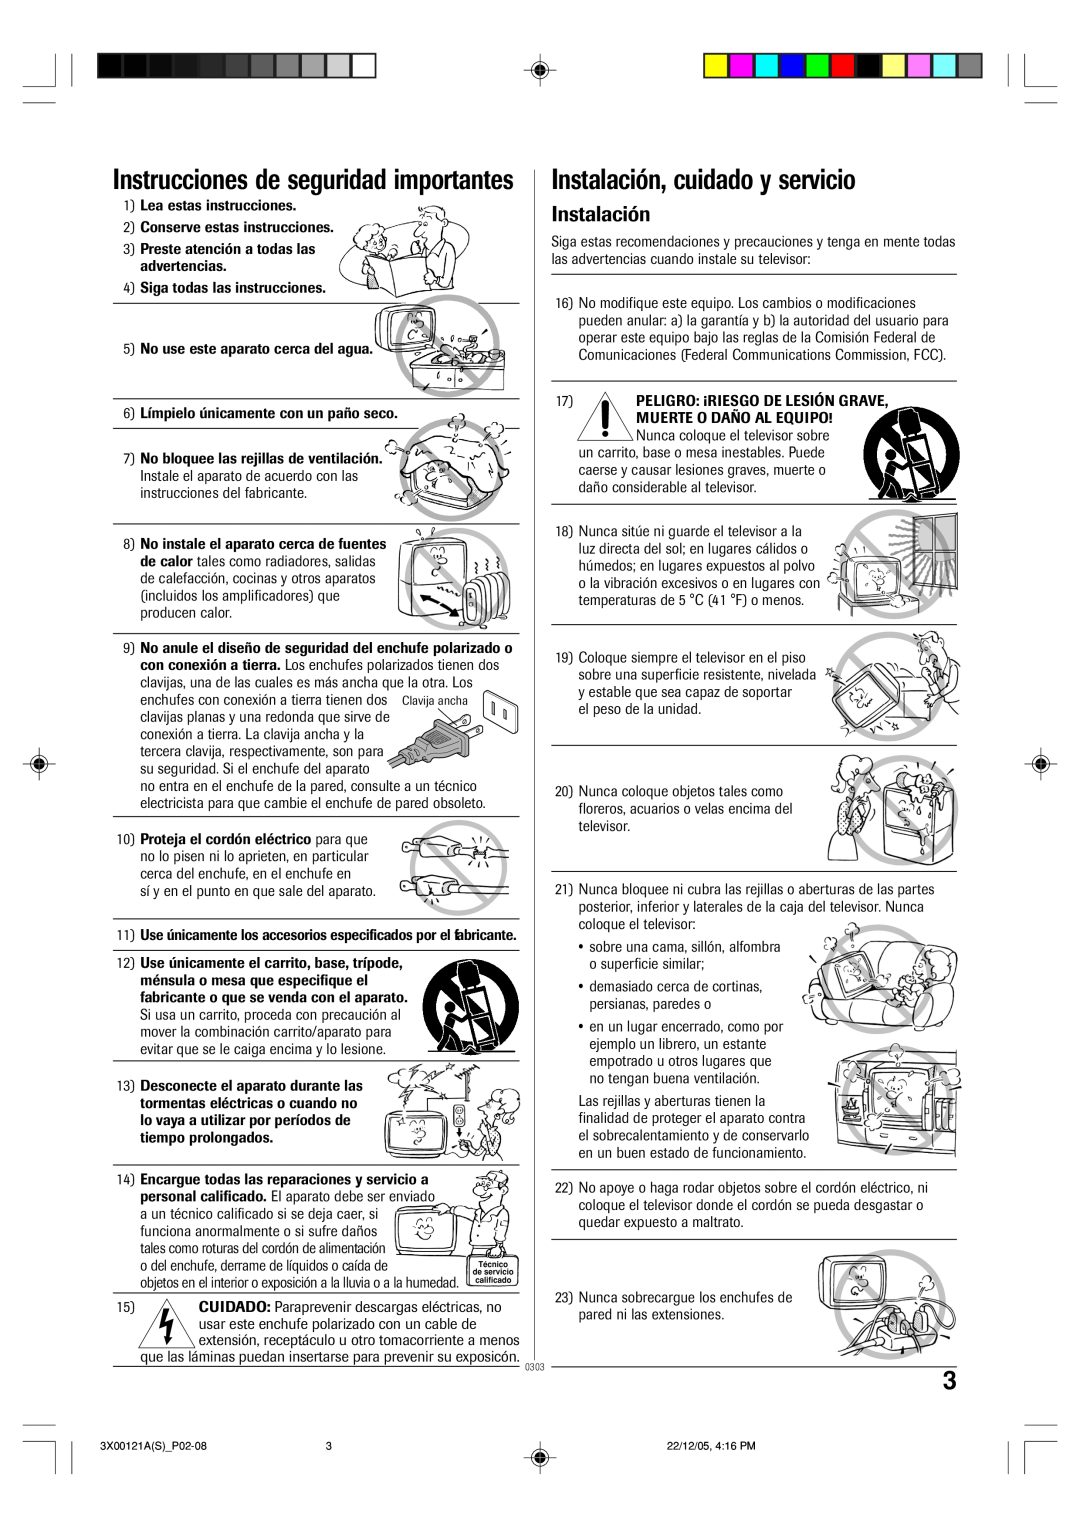 Toshiba 13A26 manual Instrucciones de seguridad importantes, Instalación, cuidado y servicio 